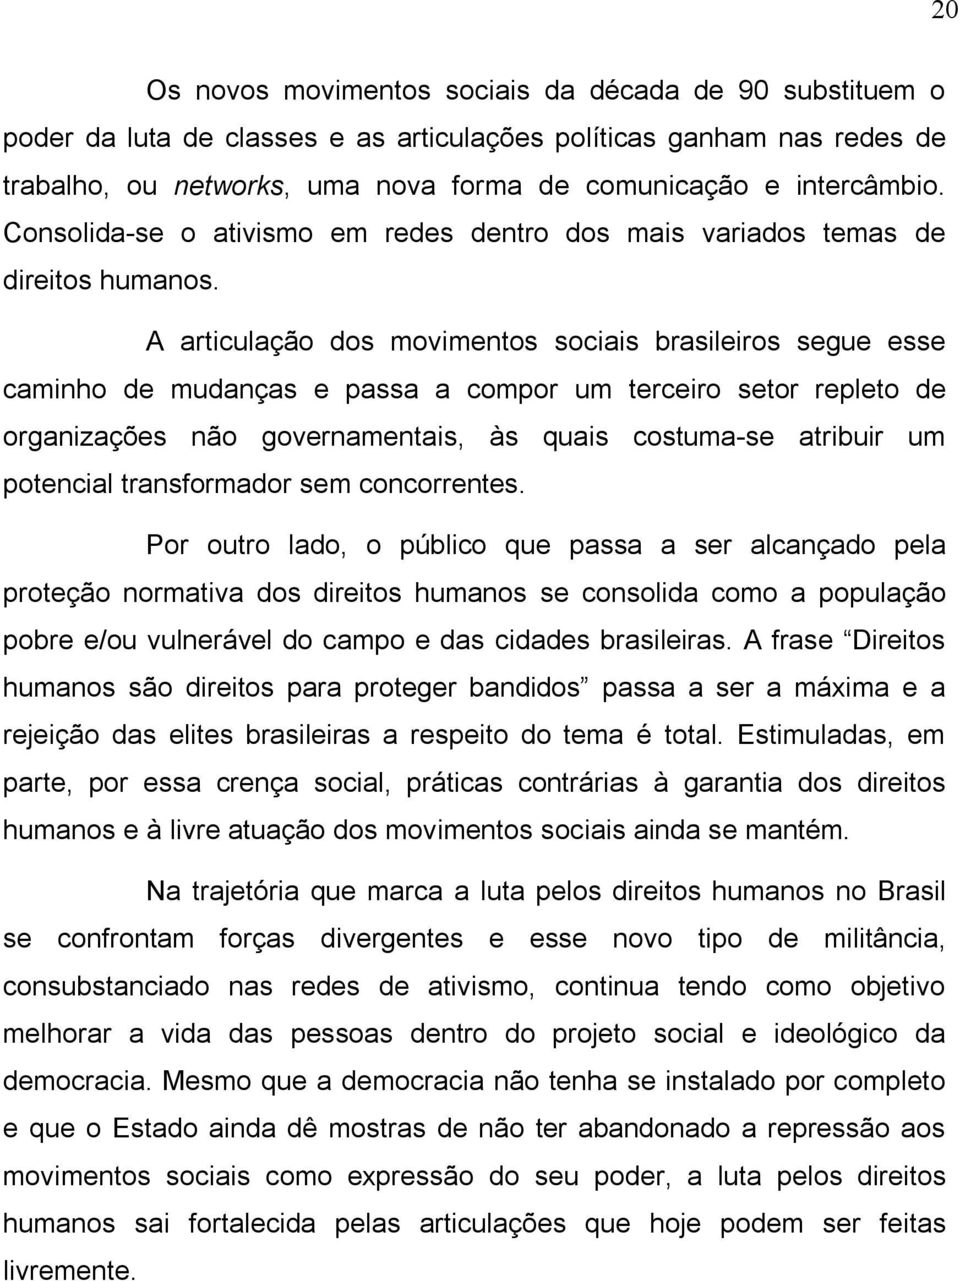 A articulação dos movimentos sociais brasileiros segue esse caminho de mudanças e passa a compor um terceiro setor repleto de organizações não governamentais, às quais costuma-se atribuir um